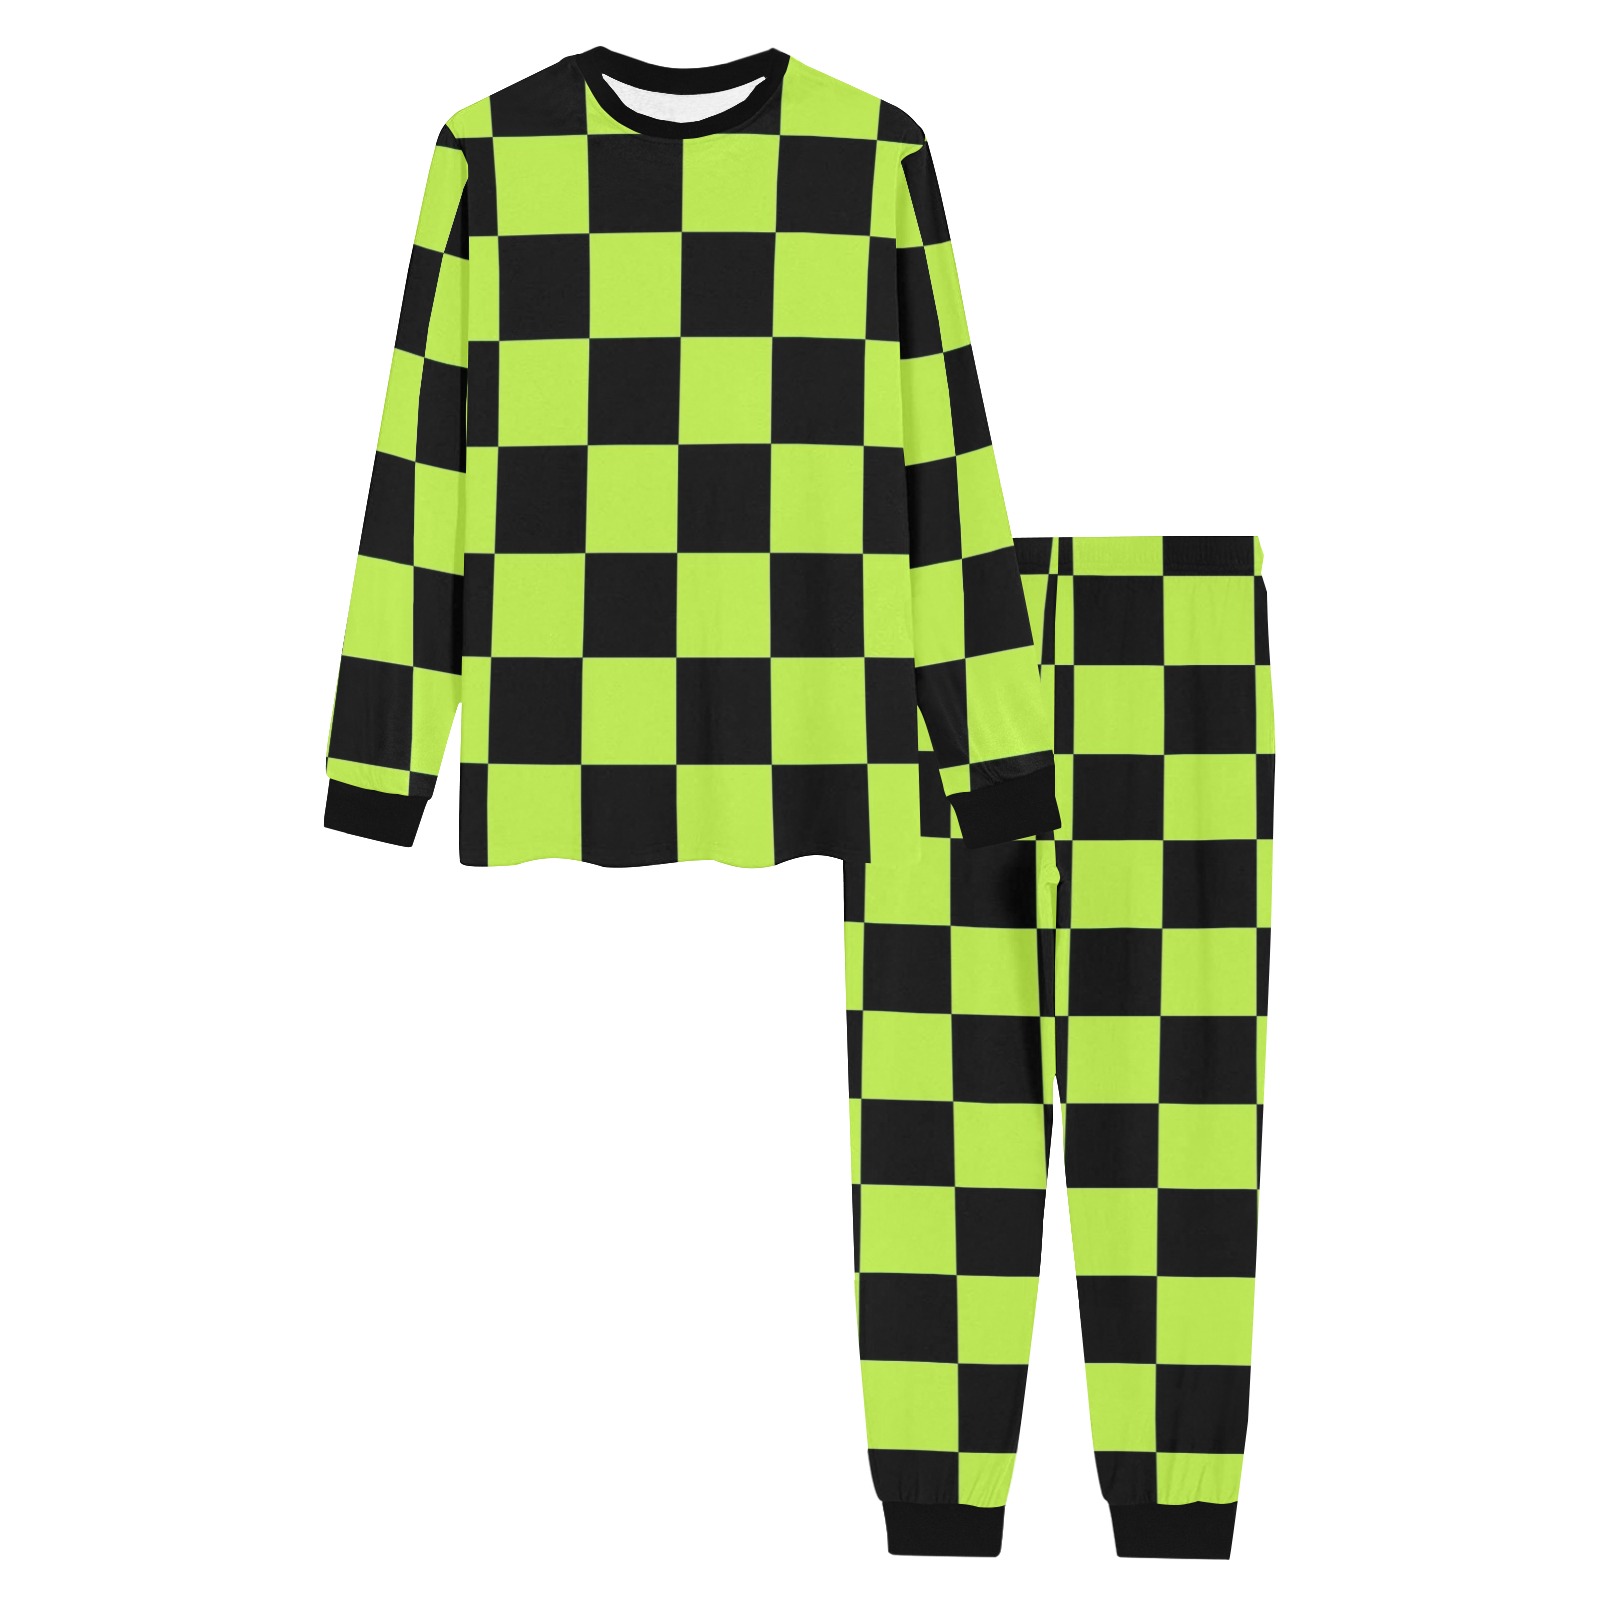 Lime Green and Black Checks Men's All Over Print Pajama Set